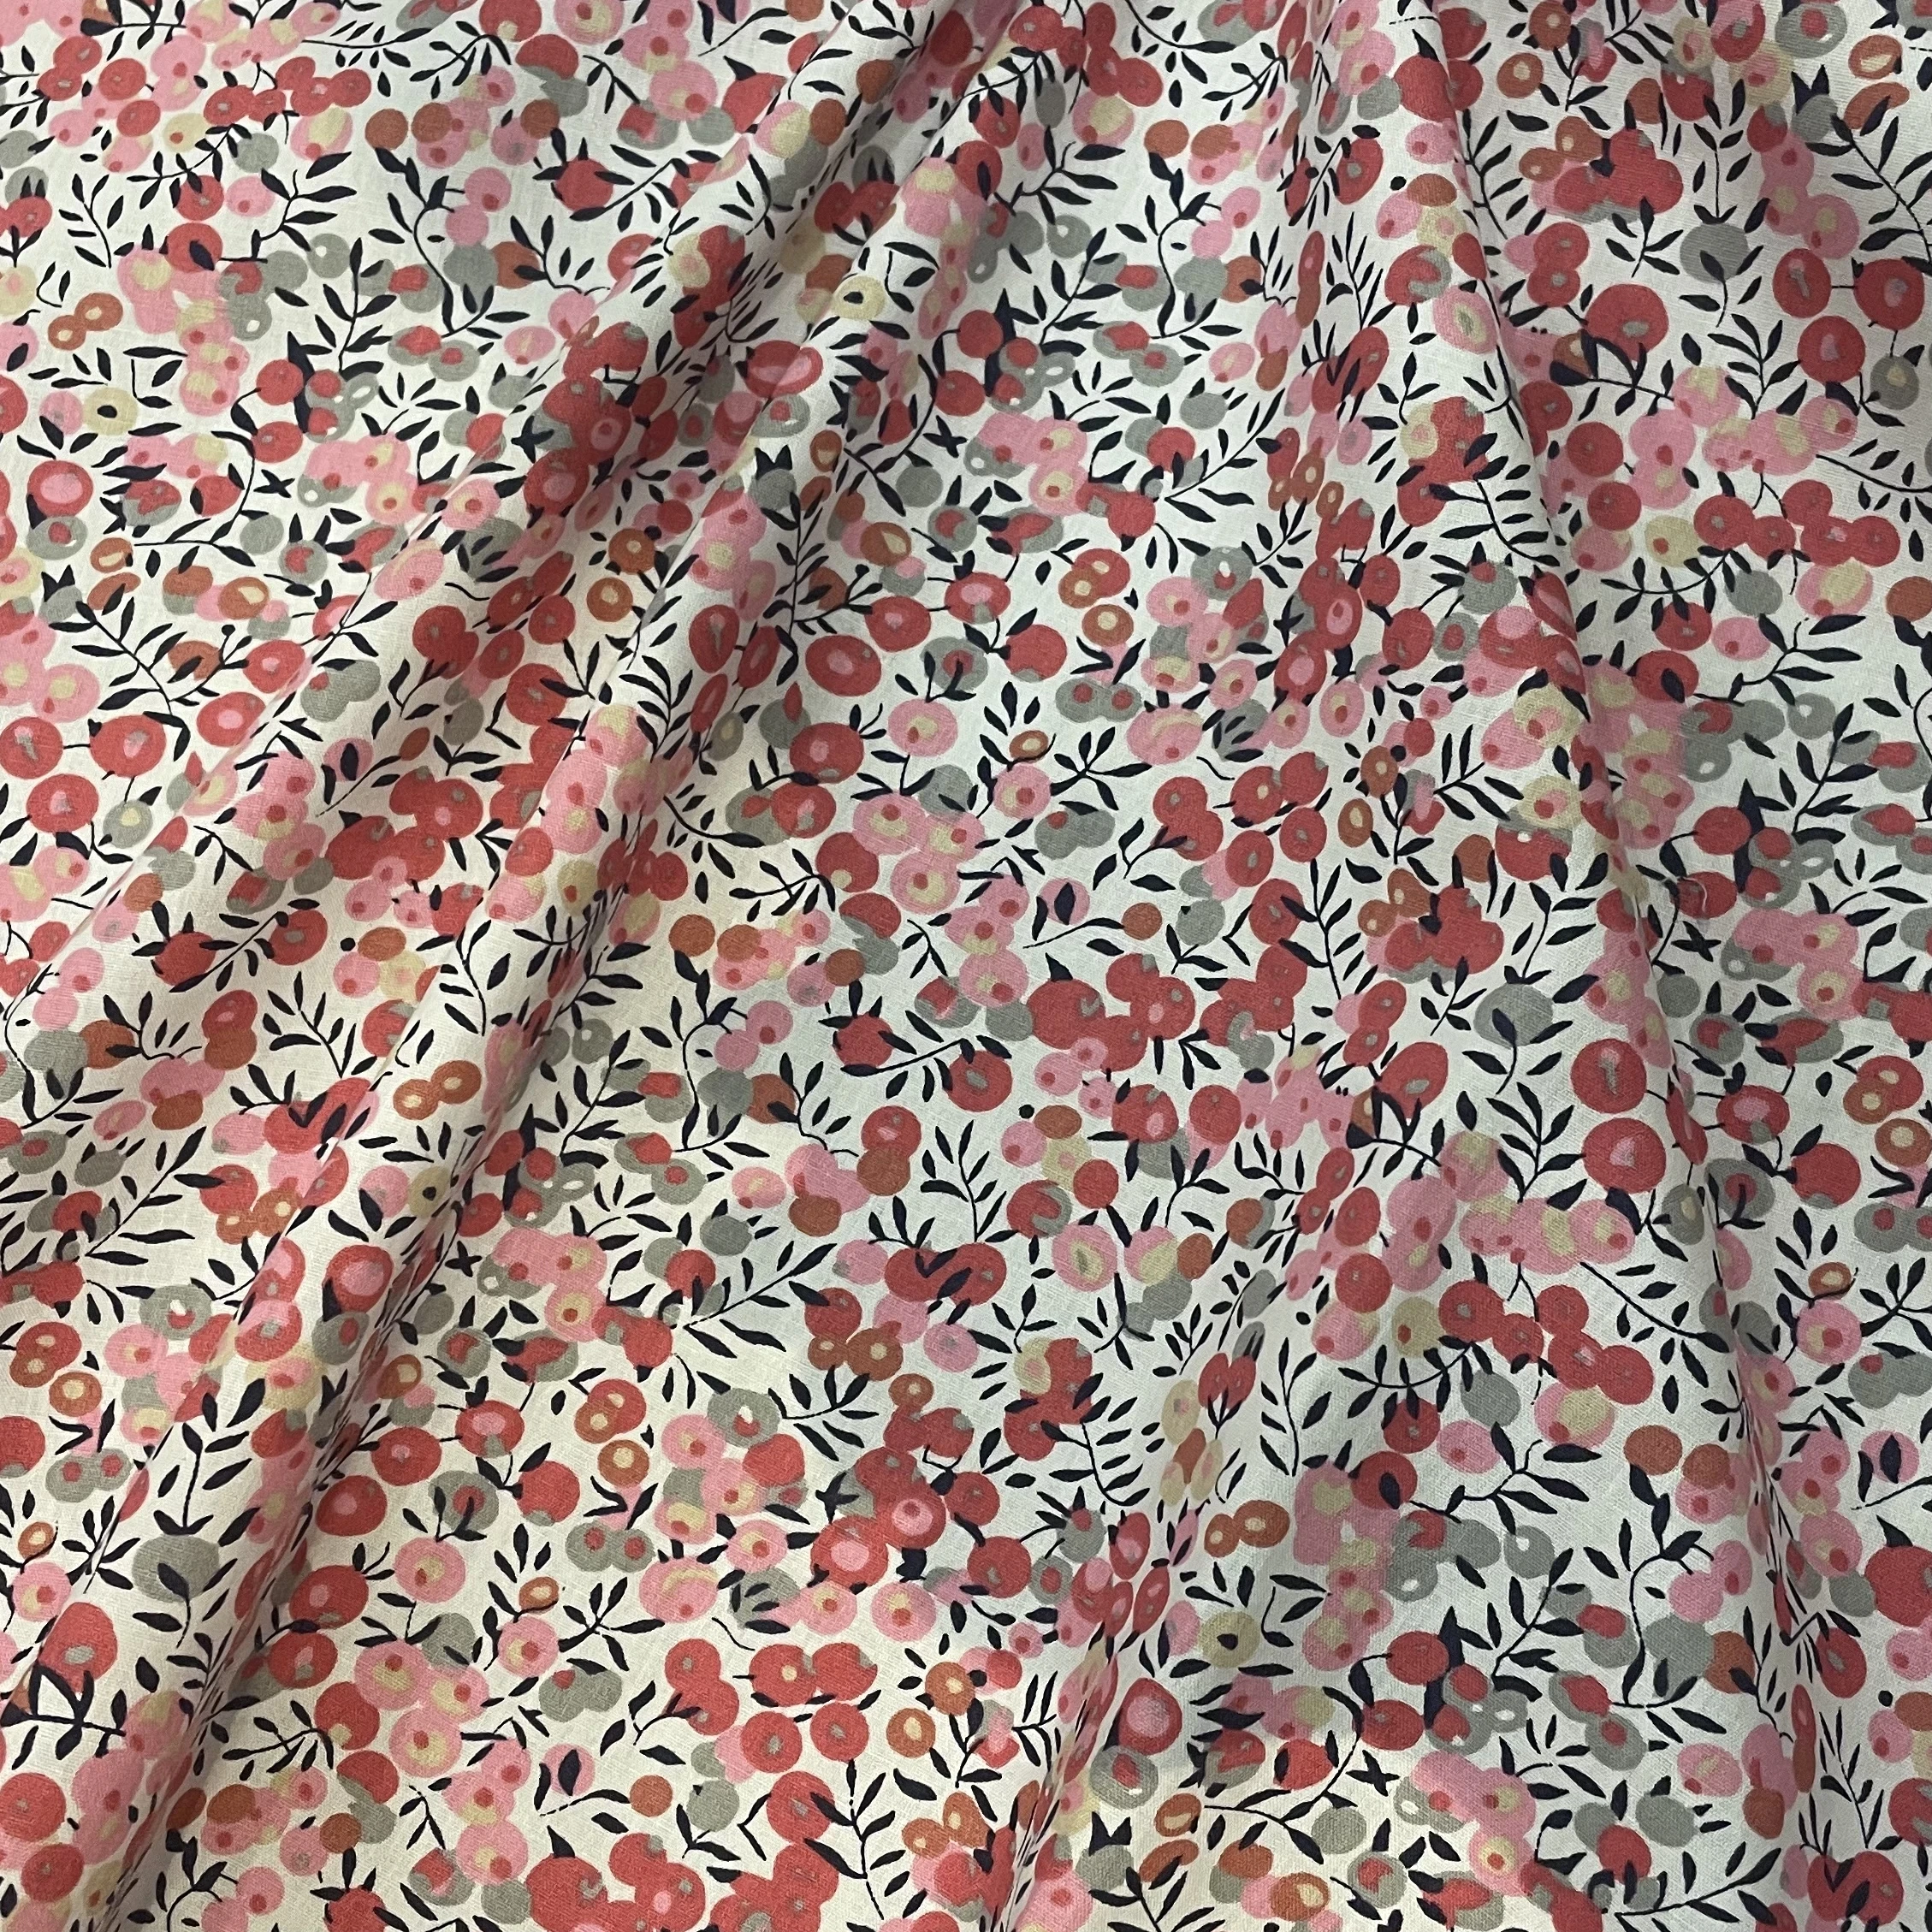 Wiltshire berry 40S tisn Liberty popelina bawełniana dla dzieci dziecięce sukienki szycie ubrań spódnica ręcznie robiona patchworkowa